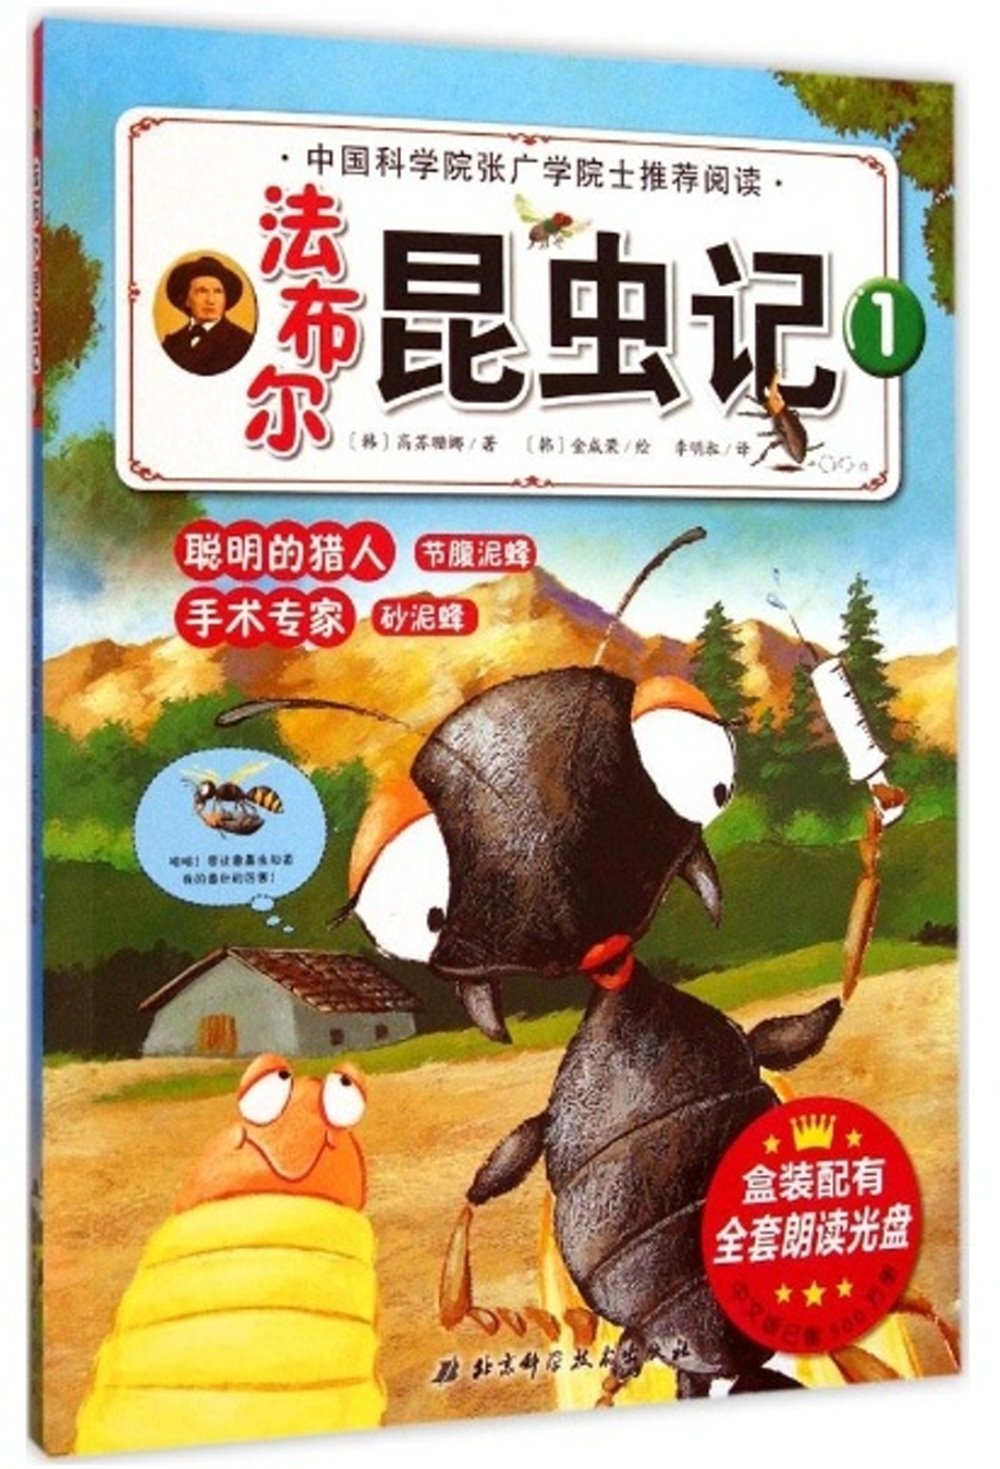 法布爾昆蟲記(1)-聰明的獵人節腹泥蜂 手術專家沙泥蜂